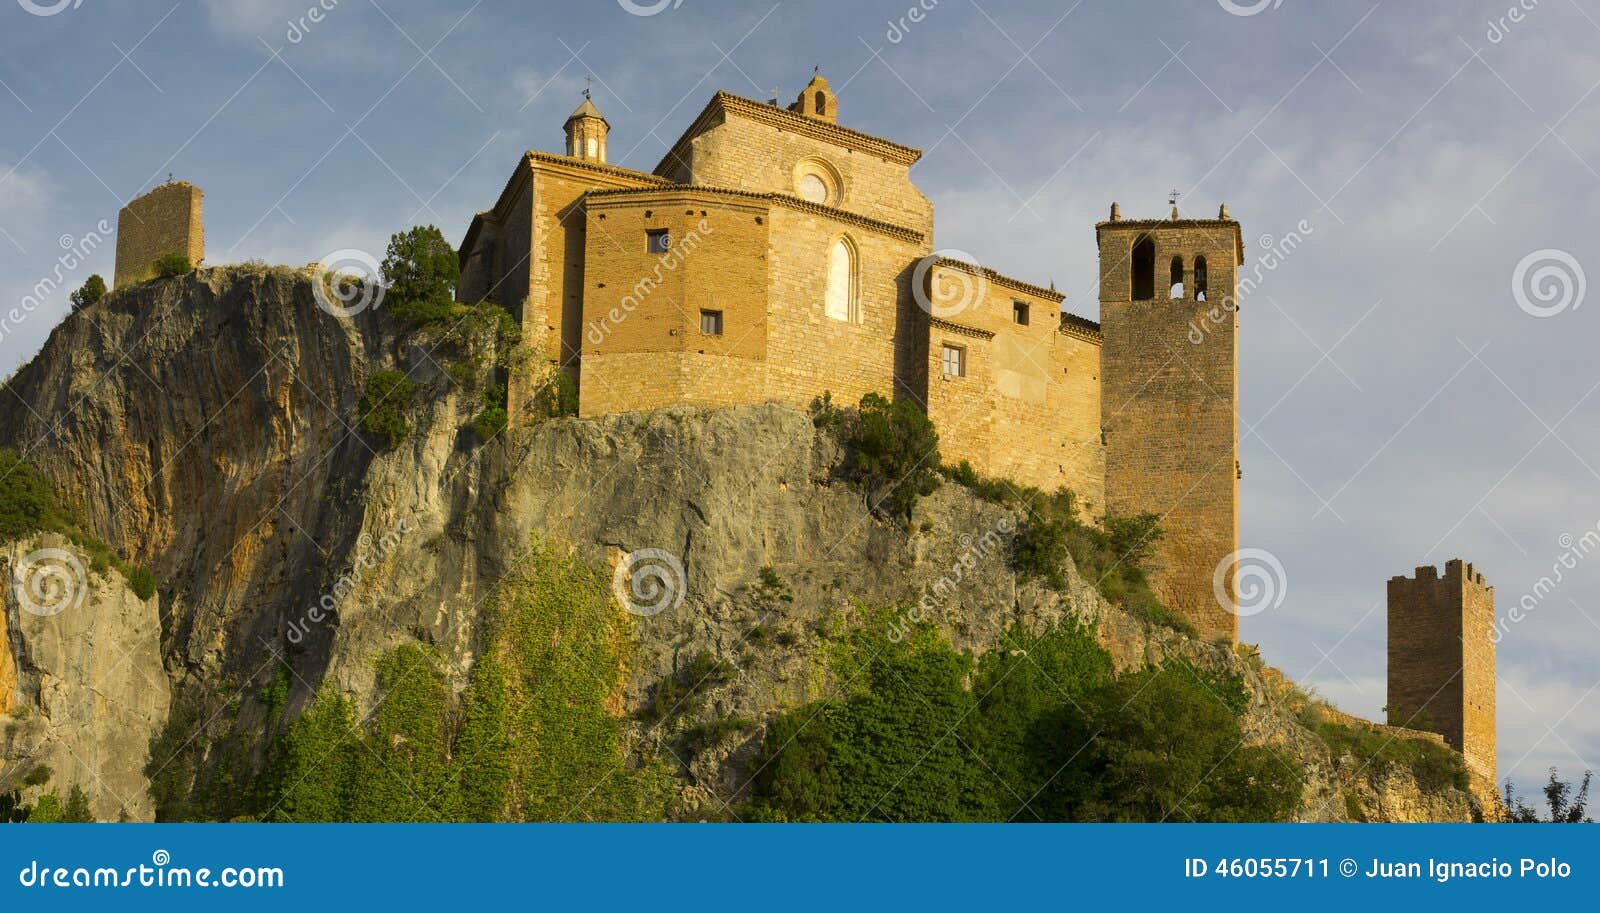 the collegiate-castle located in the village of alquÃÂ©zar in the